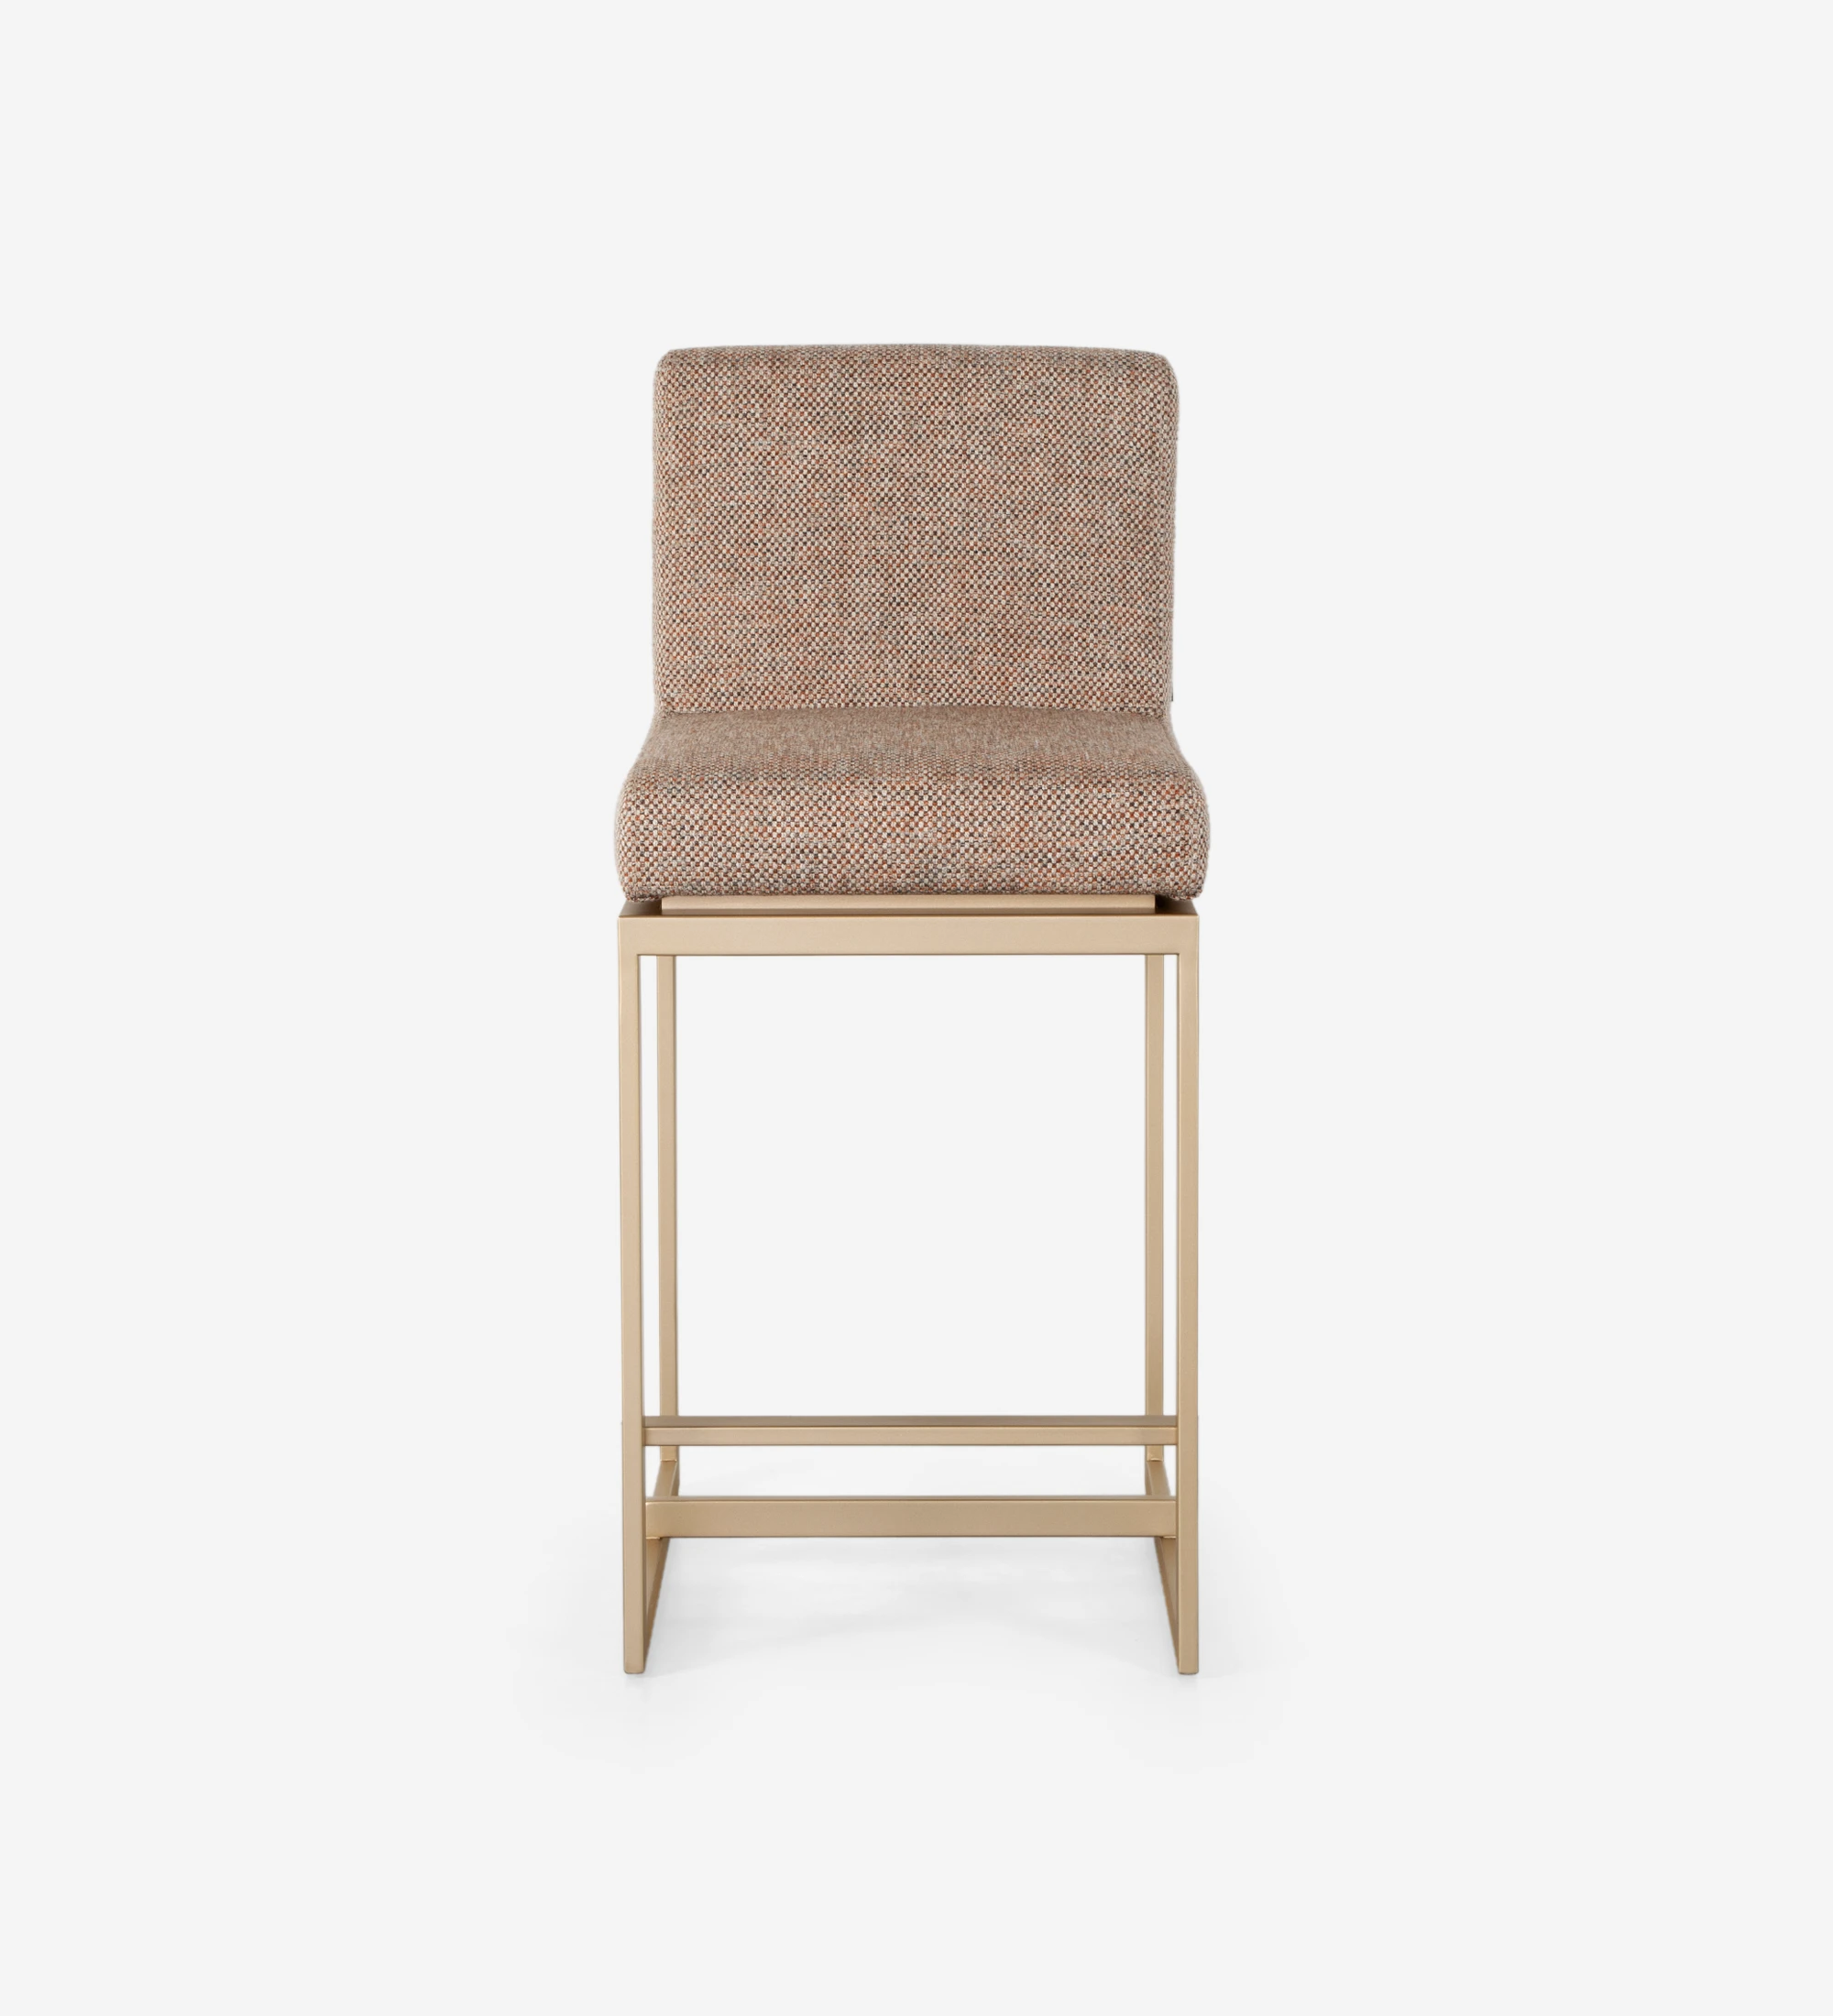 Taburete con asiento y respaldo tapizados en tela, con estructura de metal lacado en dorado